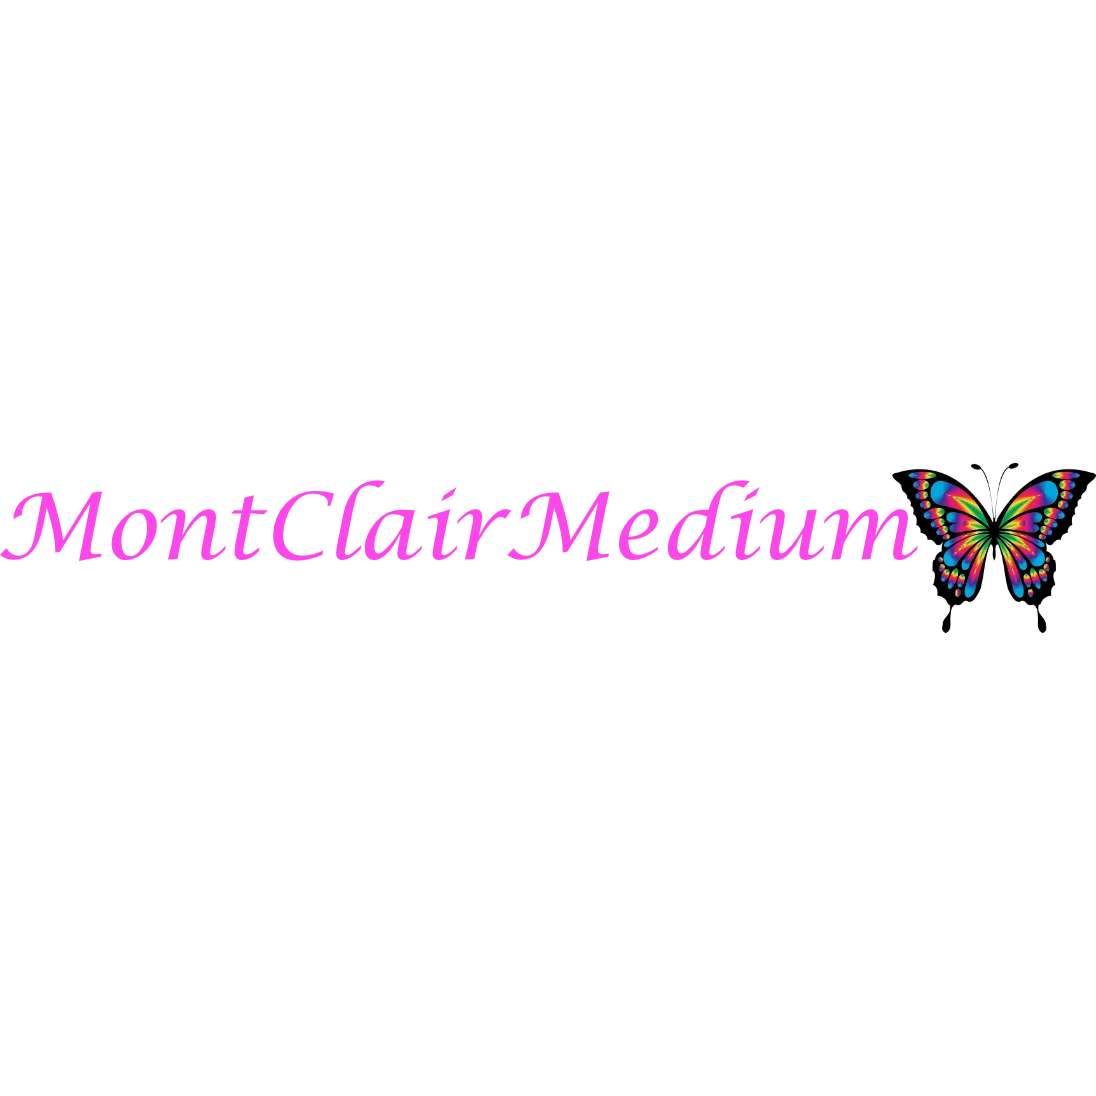 MontClairMedium Logo